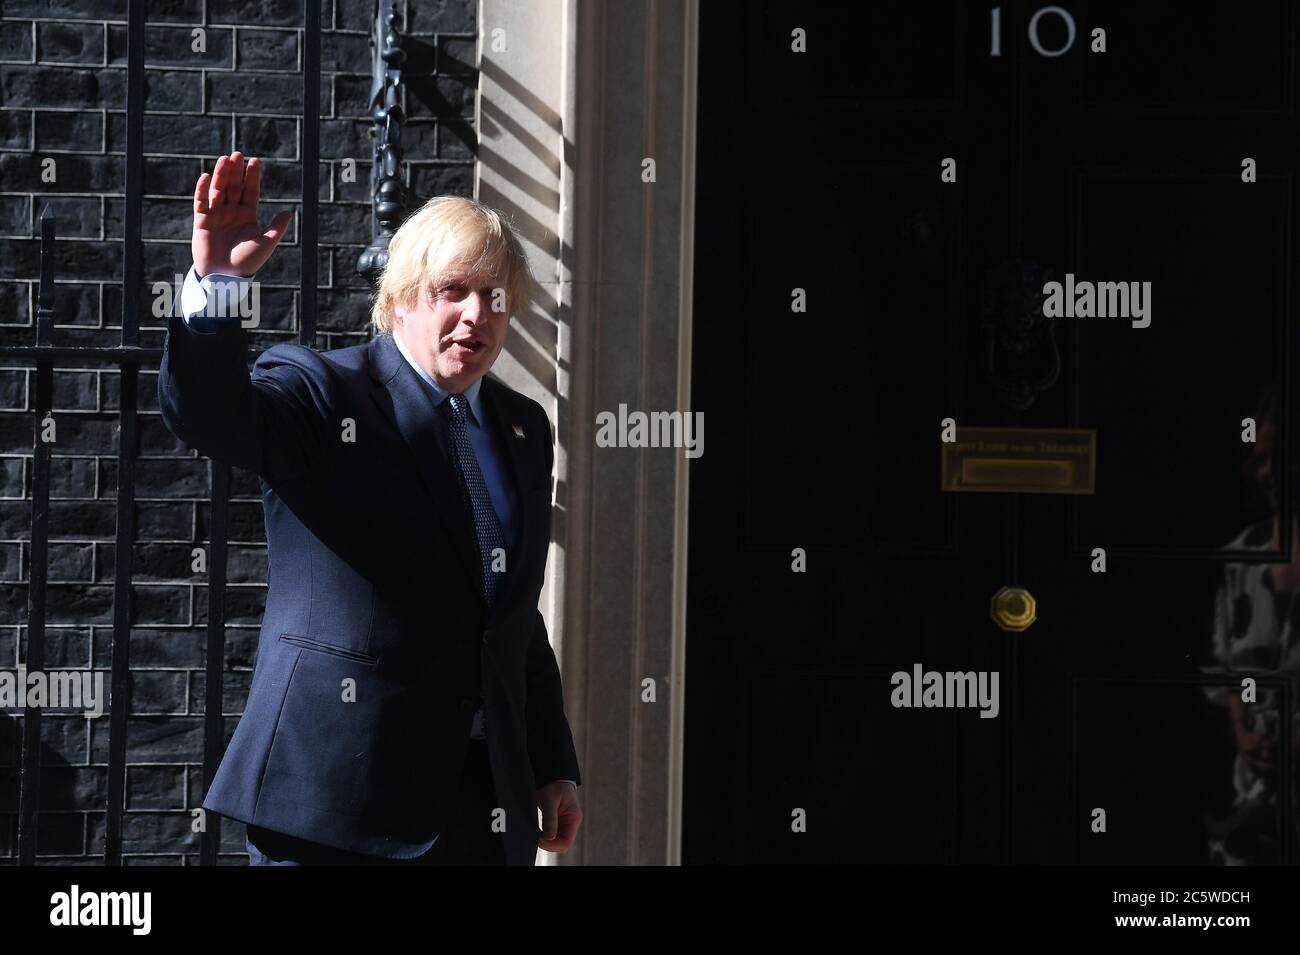 Dans le cadre des célébrations de l'anniversaire du NHS, le Premier ministre Boris Johnson, situé à l'extérieur du 10 Downing Street, à Londres, se joint à la pause pour applaudir pour saluer le 72e anniversaire du NHS. Banque D'Images